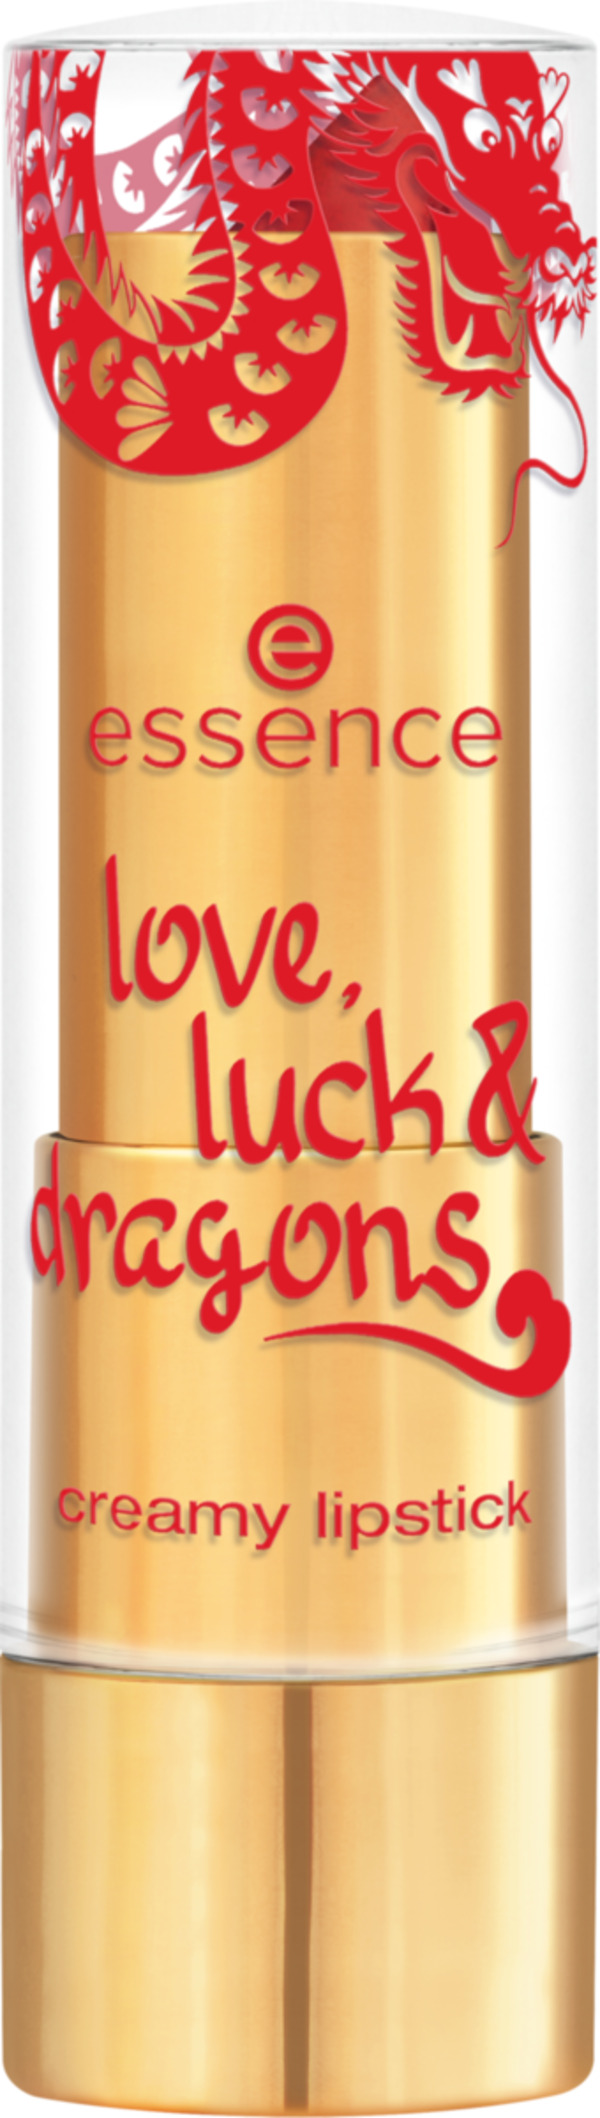 Bild 1 von essence love, luck & dragons creamy lipstick 02 Dragons Dream In Red